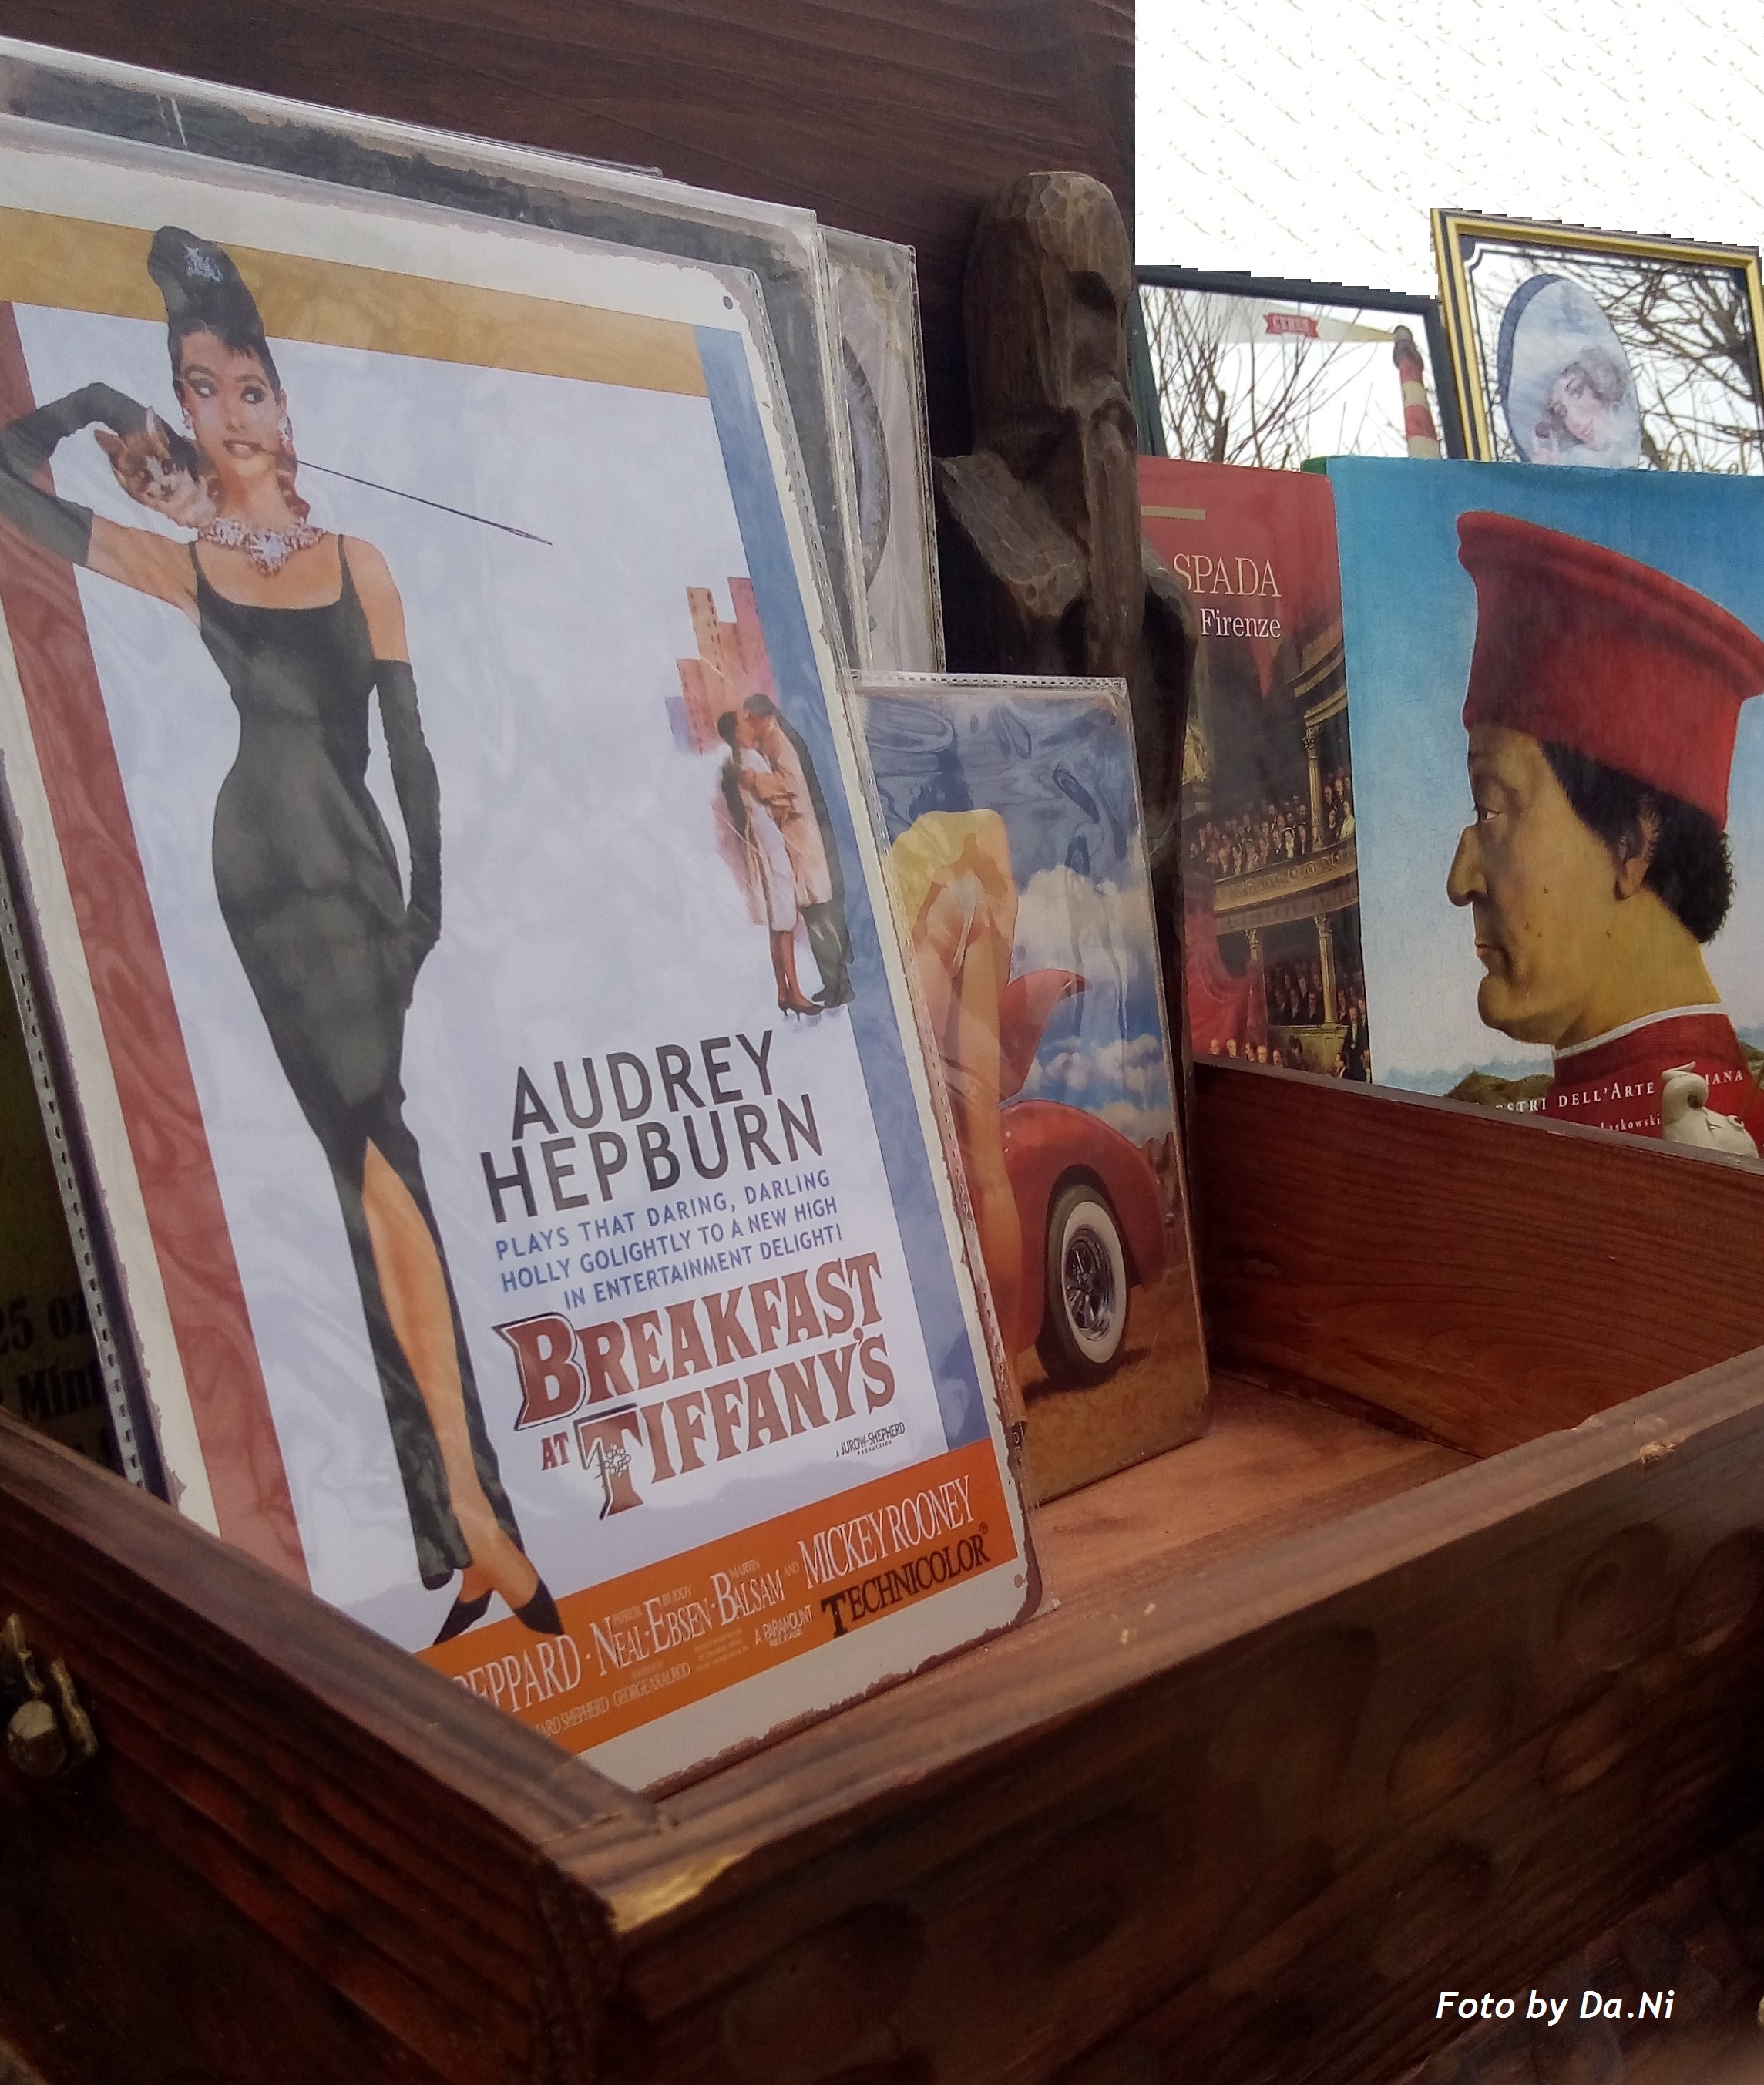 Immagine di locandina raffigurante l'attrice Audrey Hepburn, e sullo sfondo alcuni libri